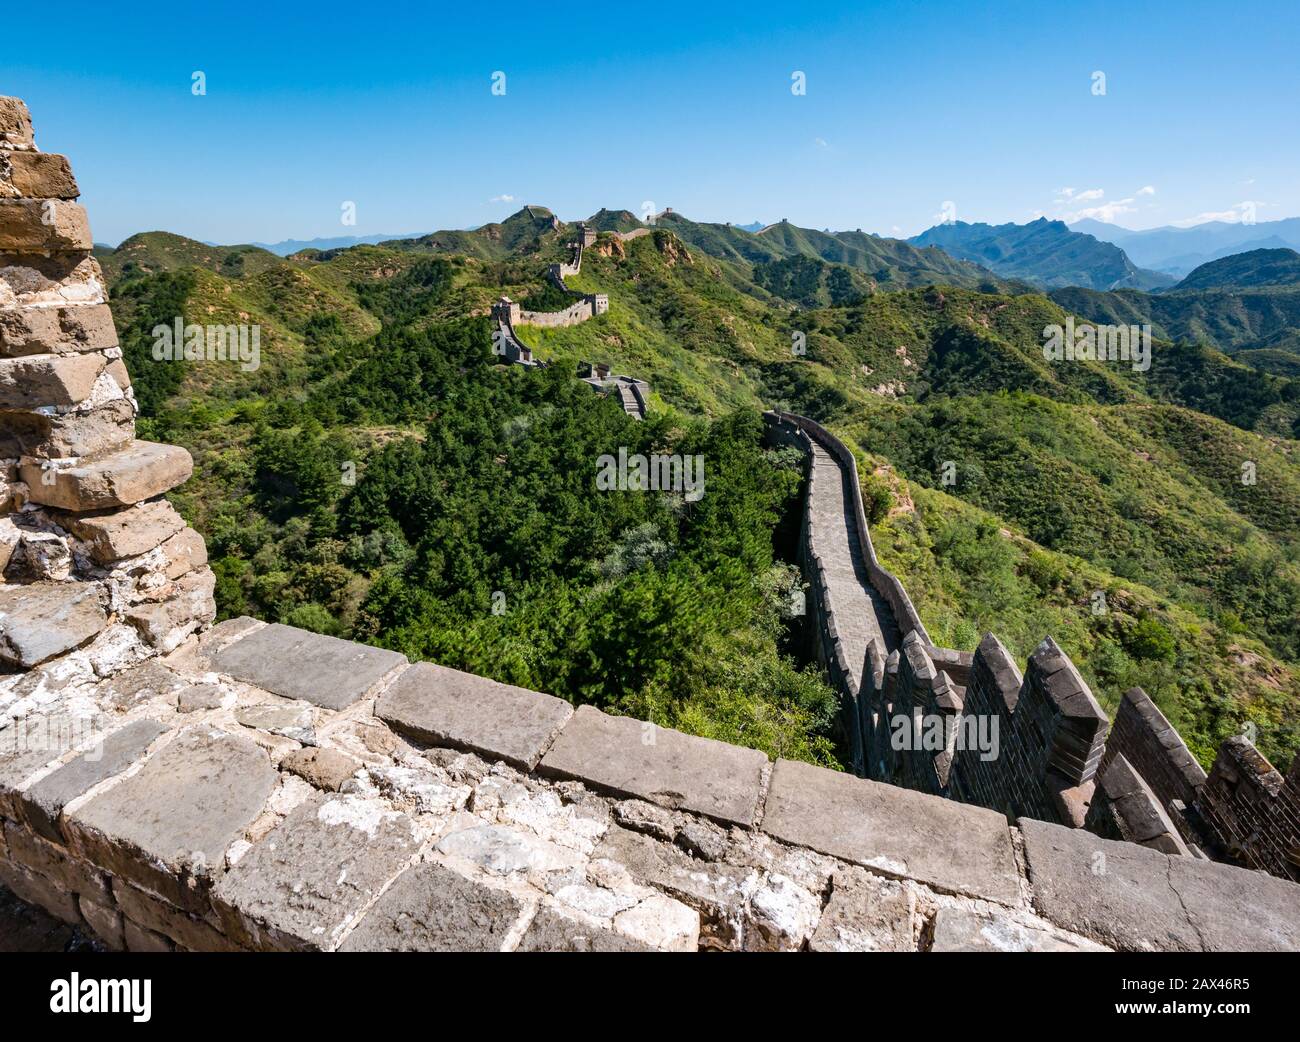 Ming-Dynastie Jinshanling Chinesische Mauer mit Wachtürmen, die in die Ferne auf dem Bergrücken, China, Asien führen Stockfoto